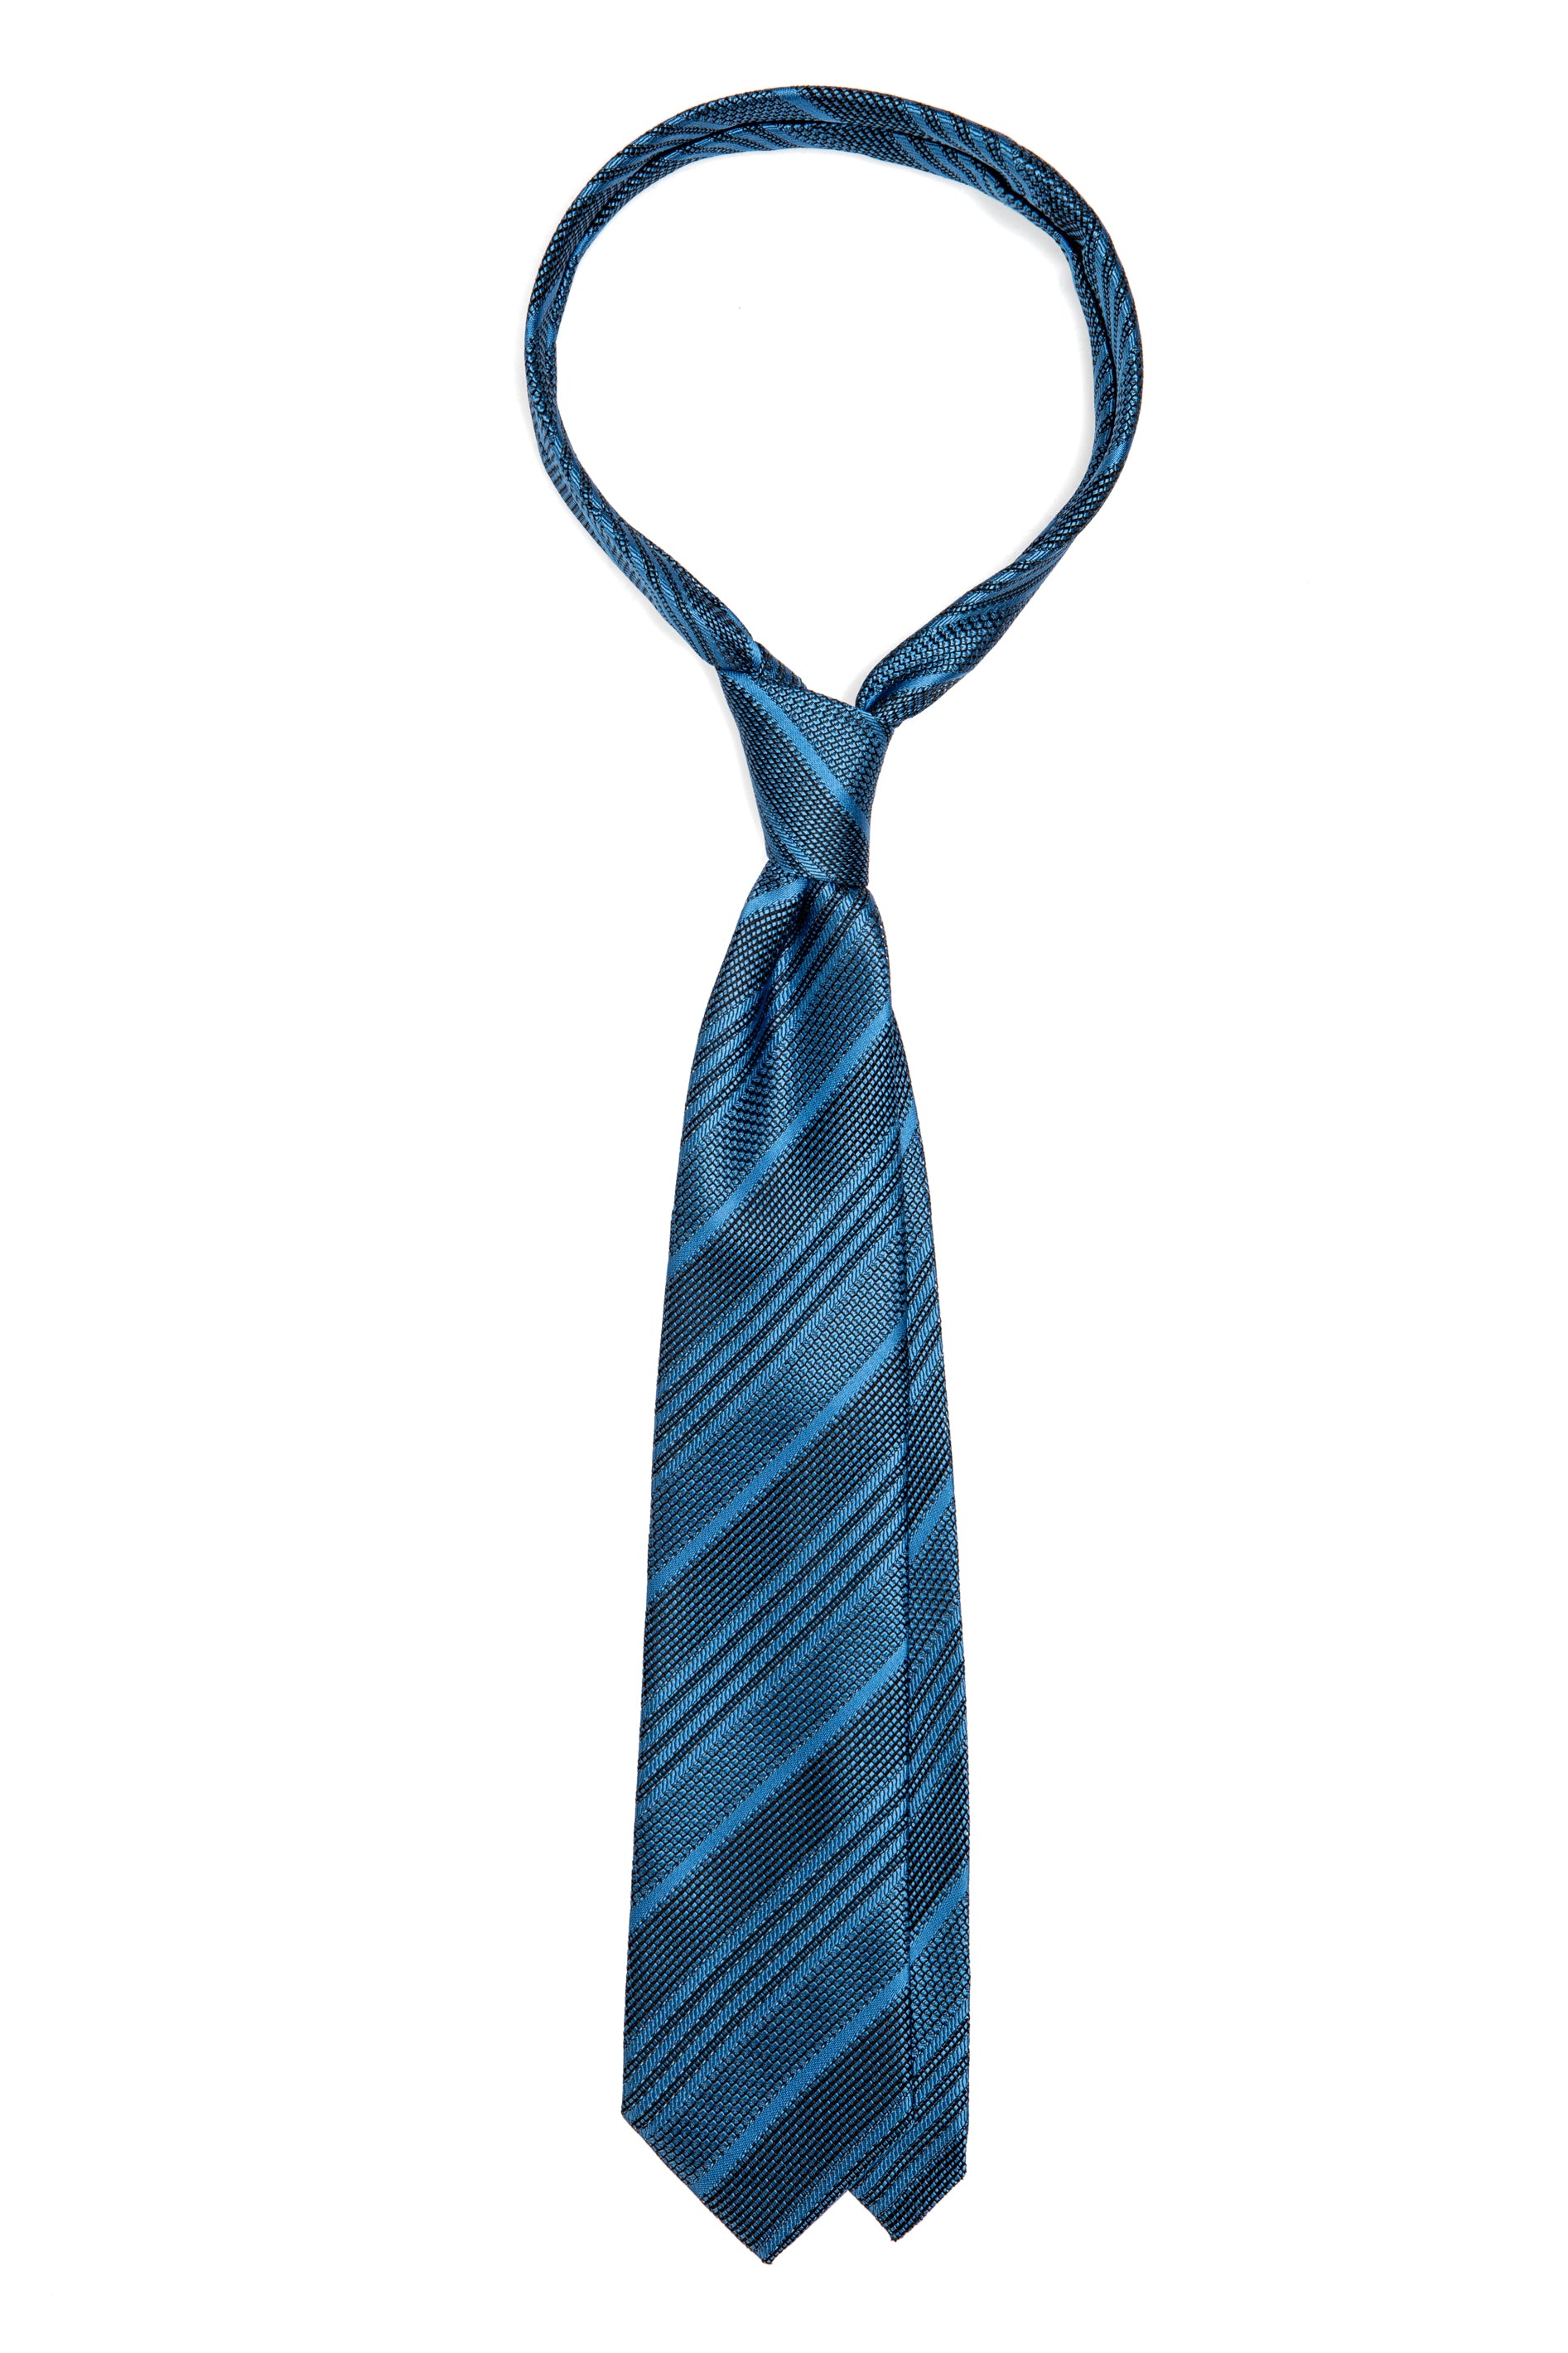 Cravatta in seta blu navy con righe